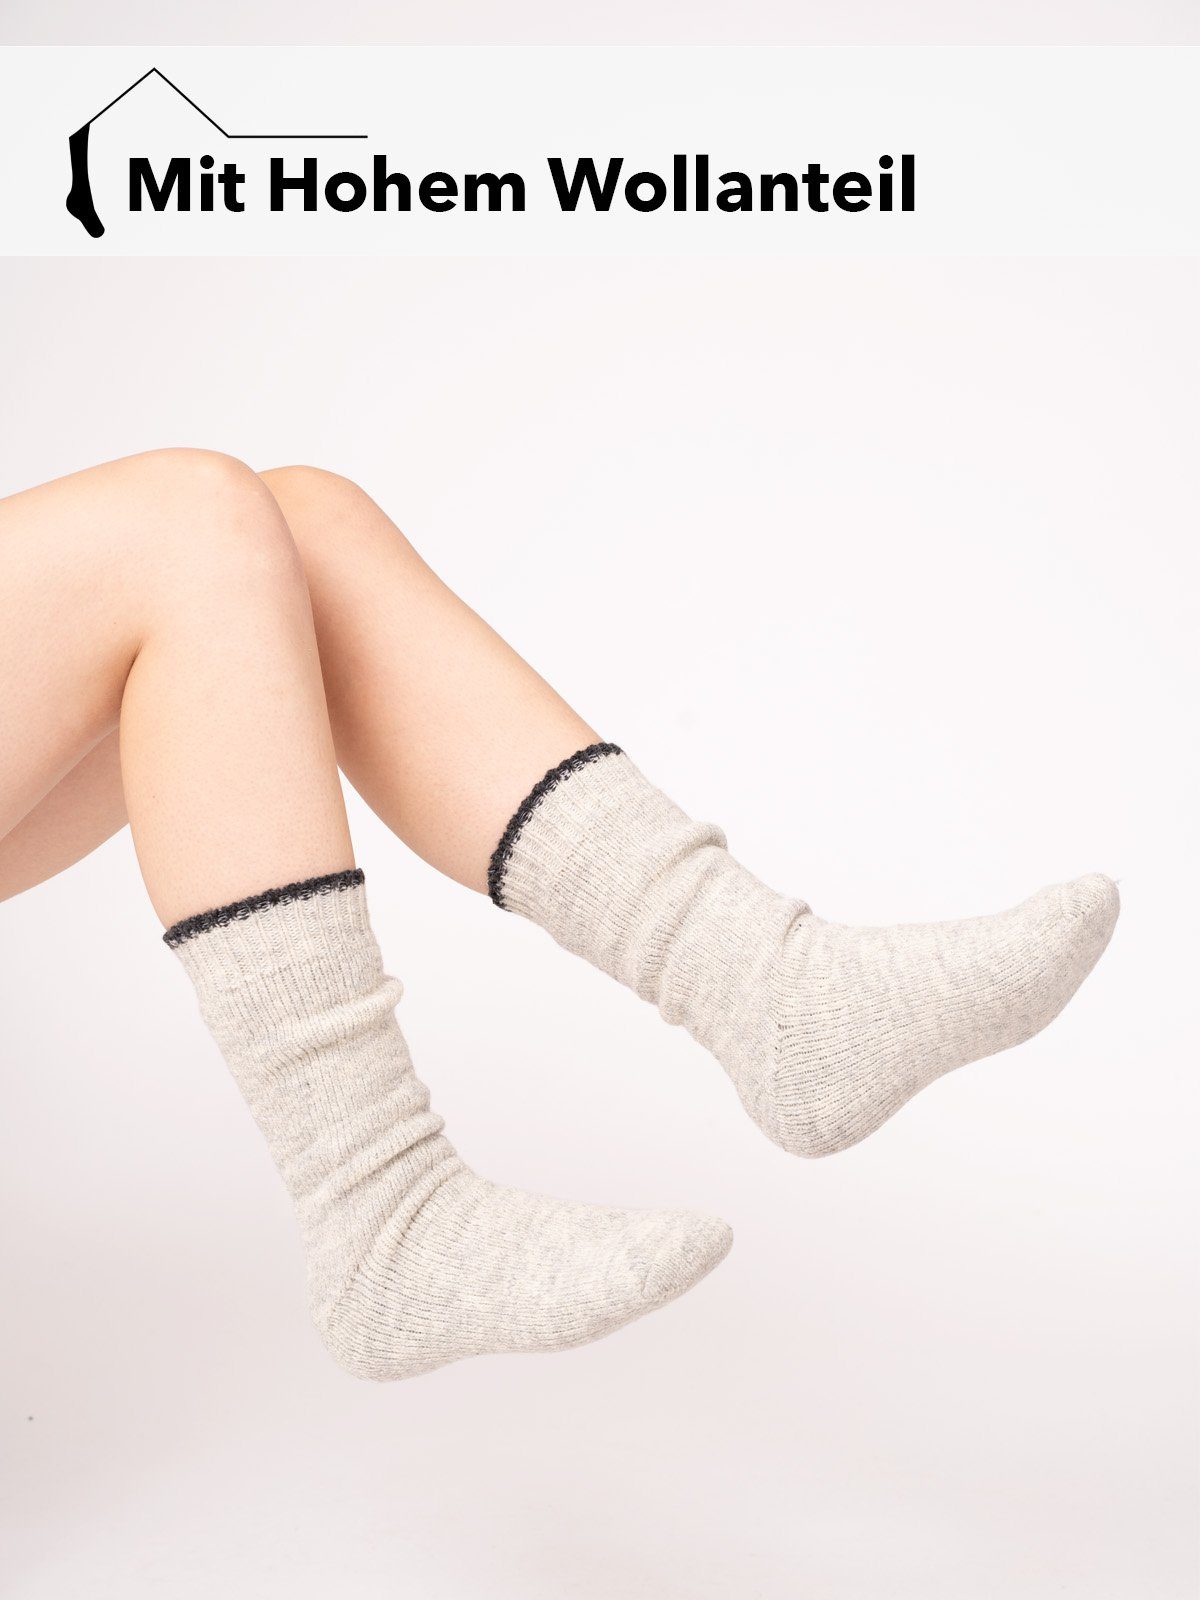 Nordic 80% Warm Norwegersocken Wollanteil Extra Wollweiß "Inuit" Skandinavische Socken Hoher Frottee Dicke HomeOfSocks Einfarbig Wollsocke